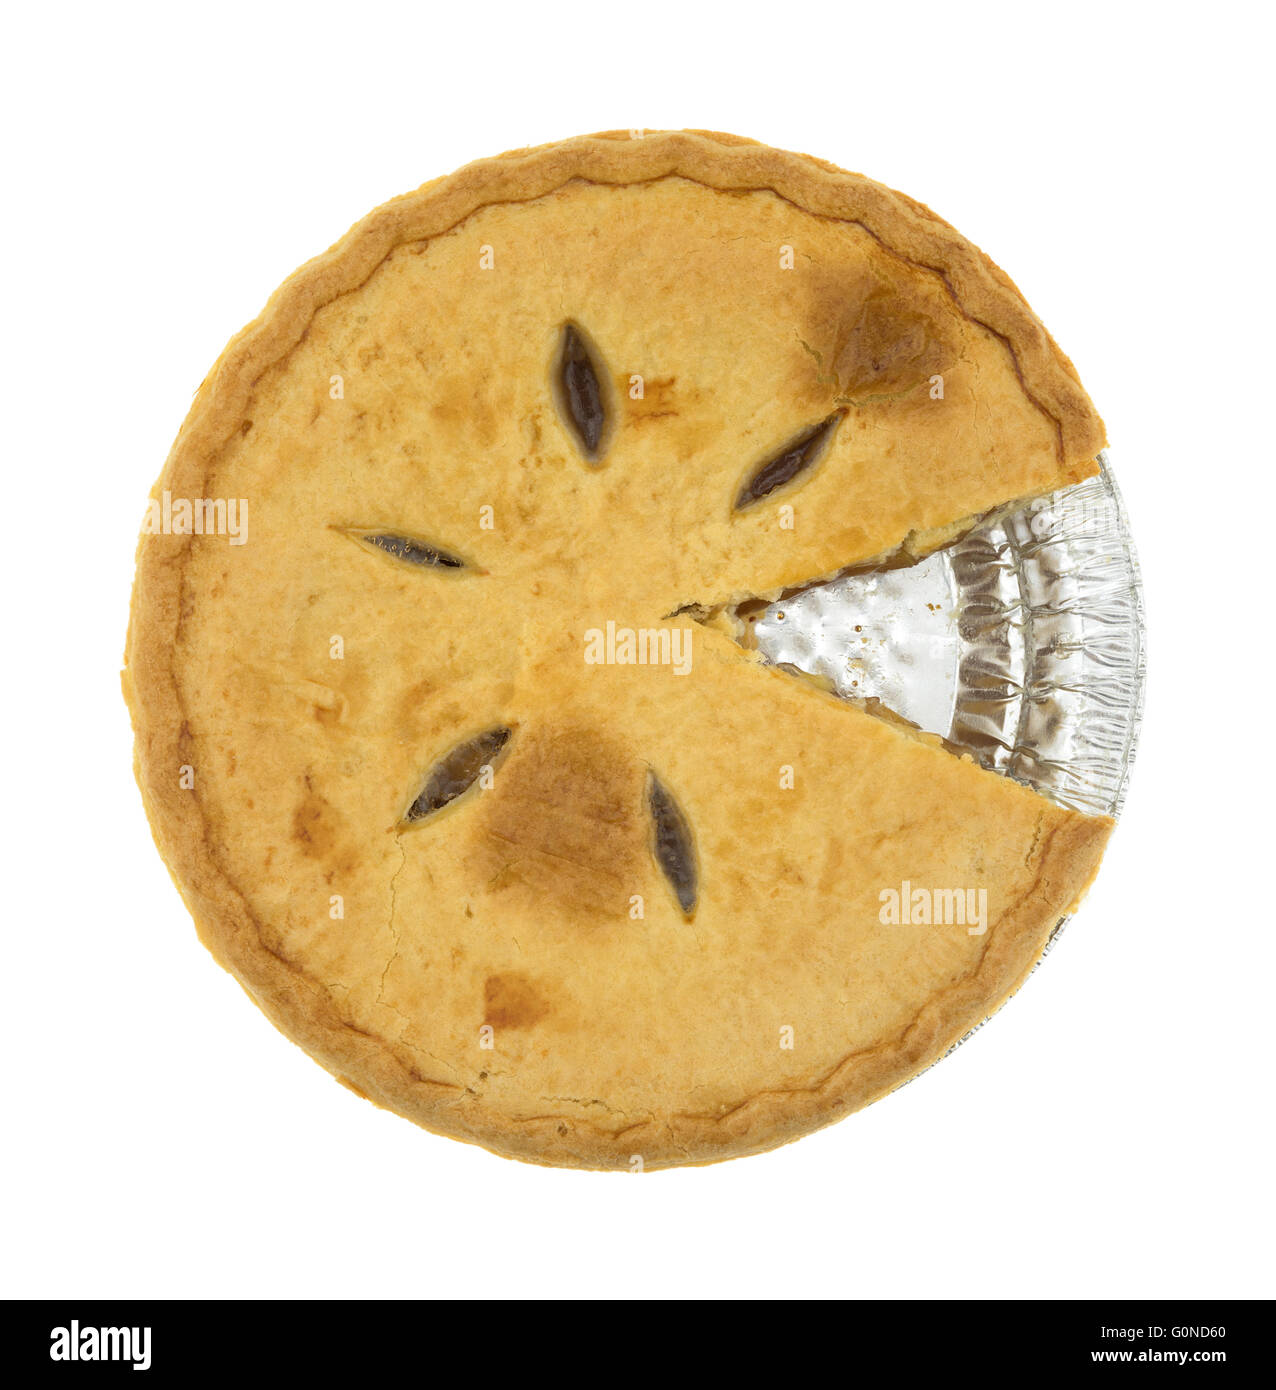 Draufsicht auf einen Zucker frei Apfelkuchen mit einer Scheibe geschnitten in die Alufolie Auflaufform isoliert auf einem weißen Hintergrund. Stockfoto